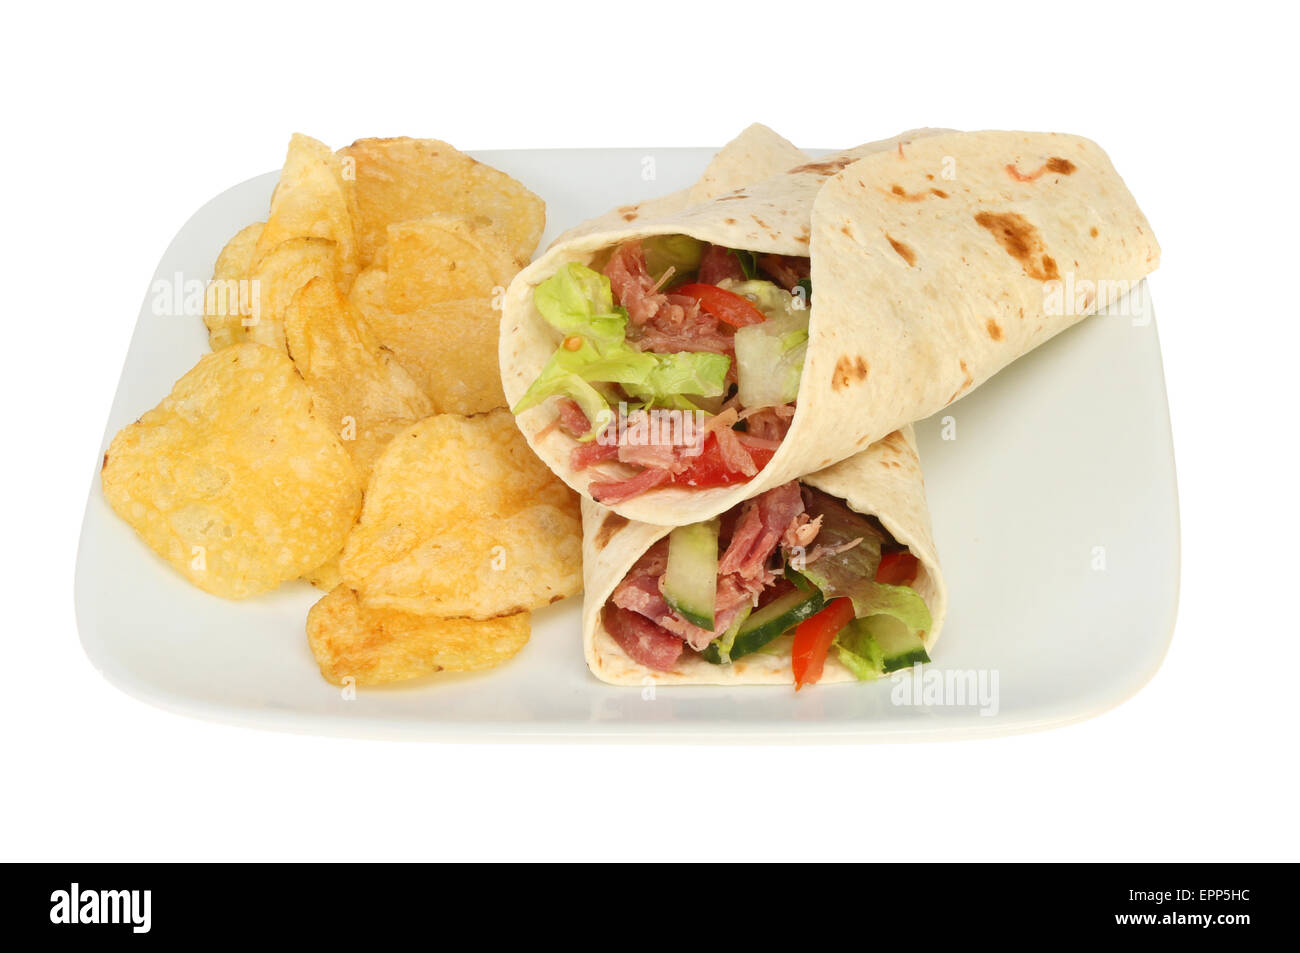 gezogenes Schweinefleisch und Salat Brot wraps mit Chips auf einem Teller isoliert gegen weiß Stockfoto